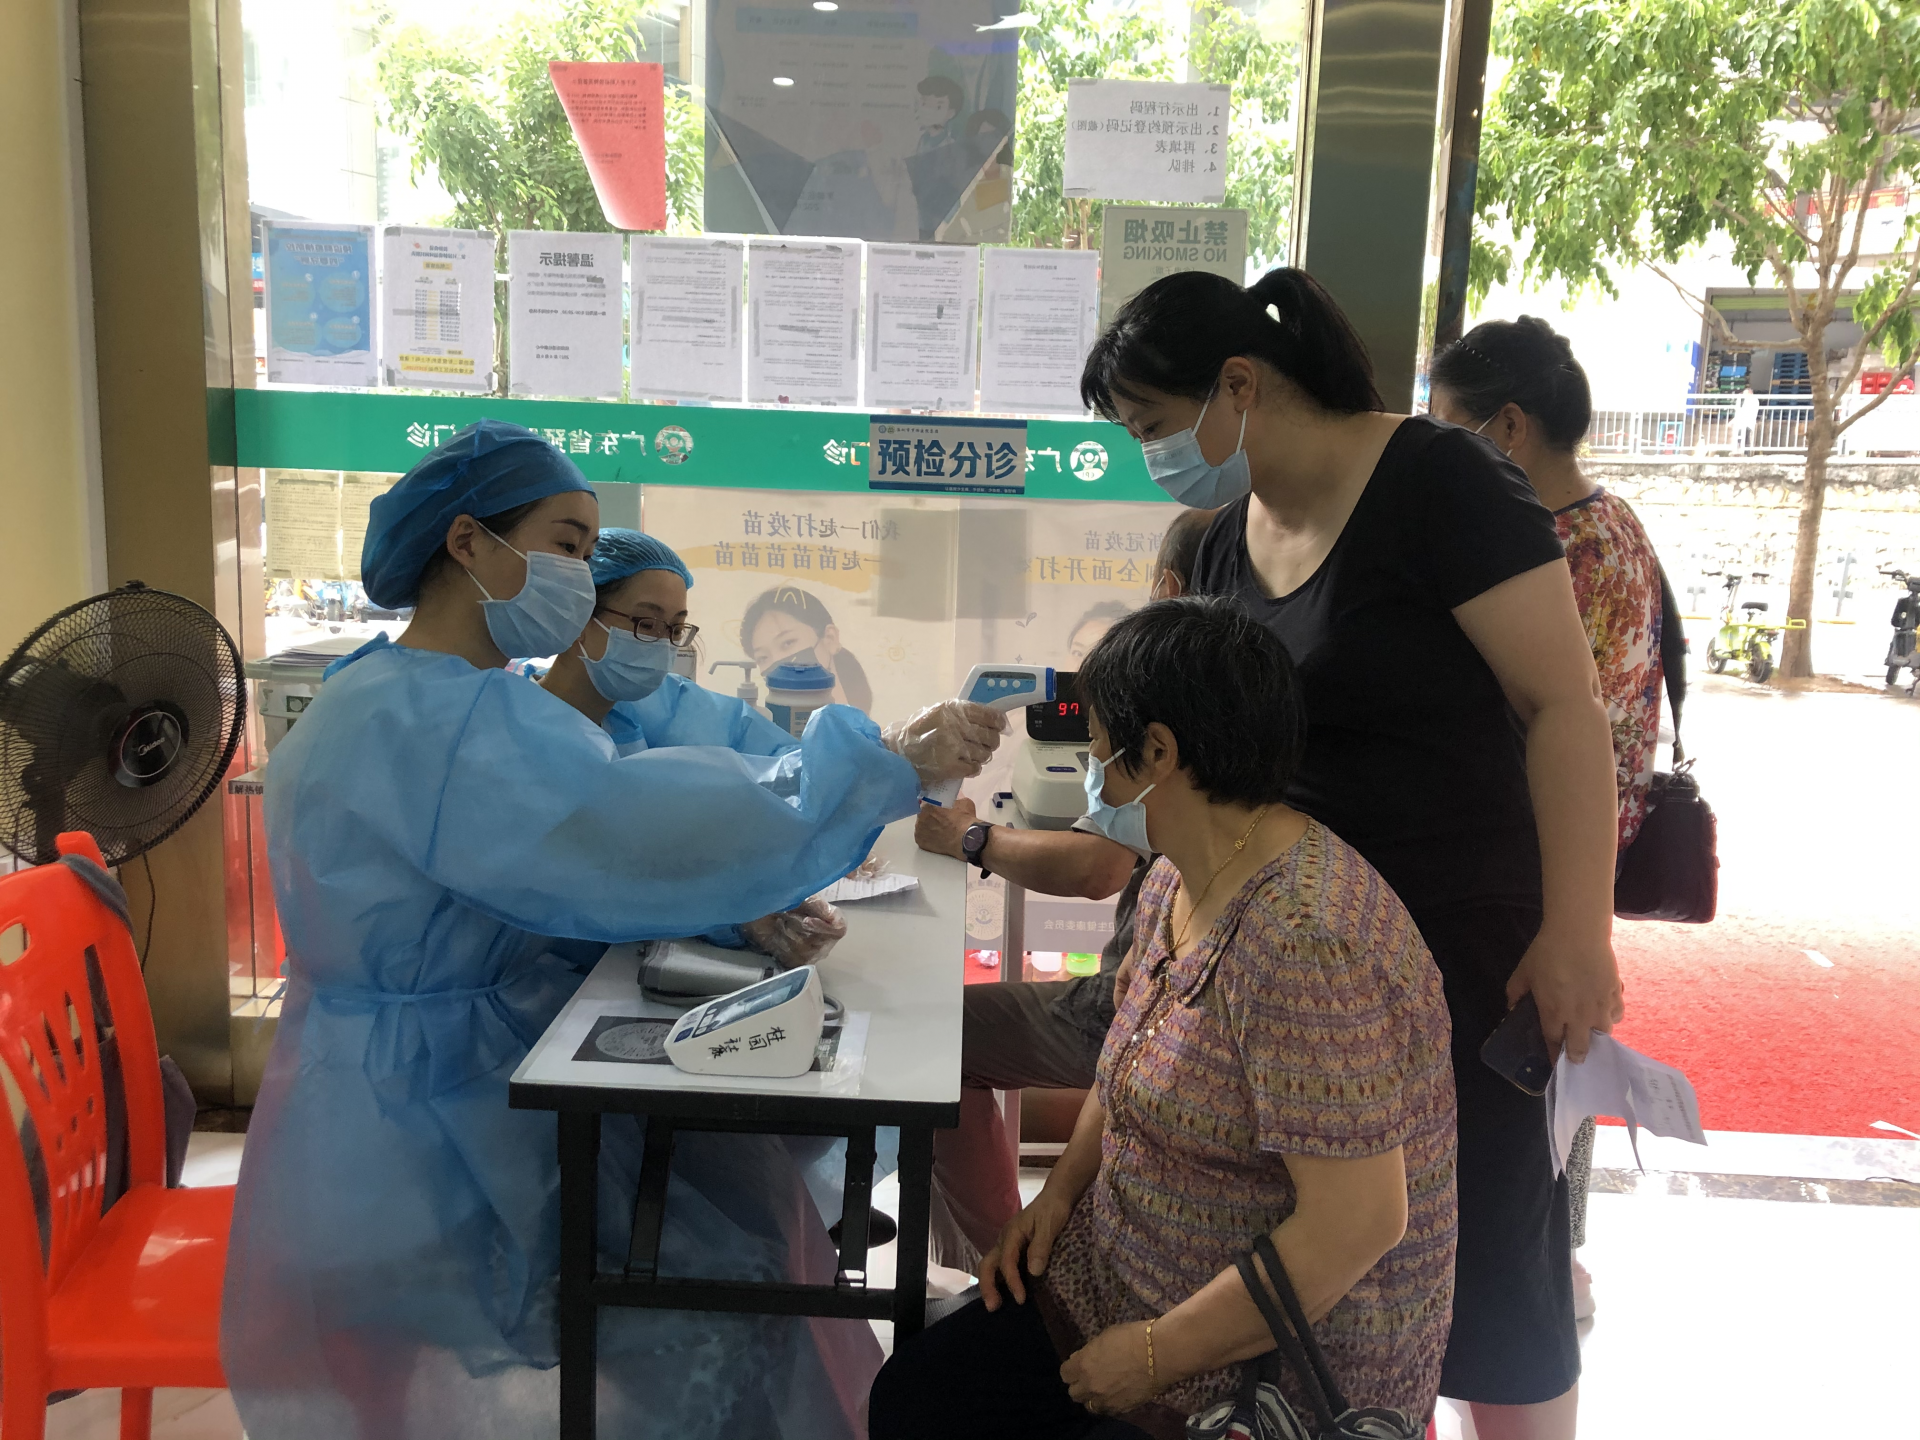 桂园街道社康为60岁以上老人接种疫苗，提供早餐、体检、接种一条龙服务